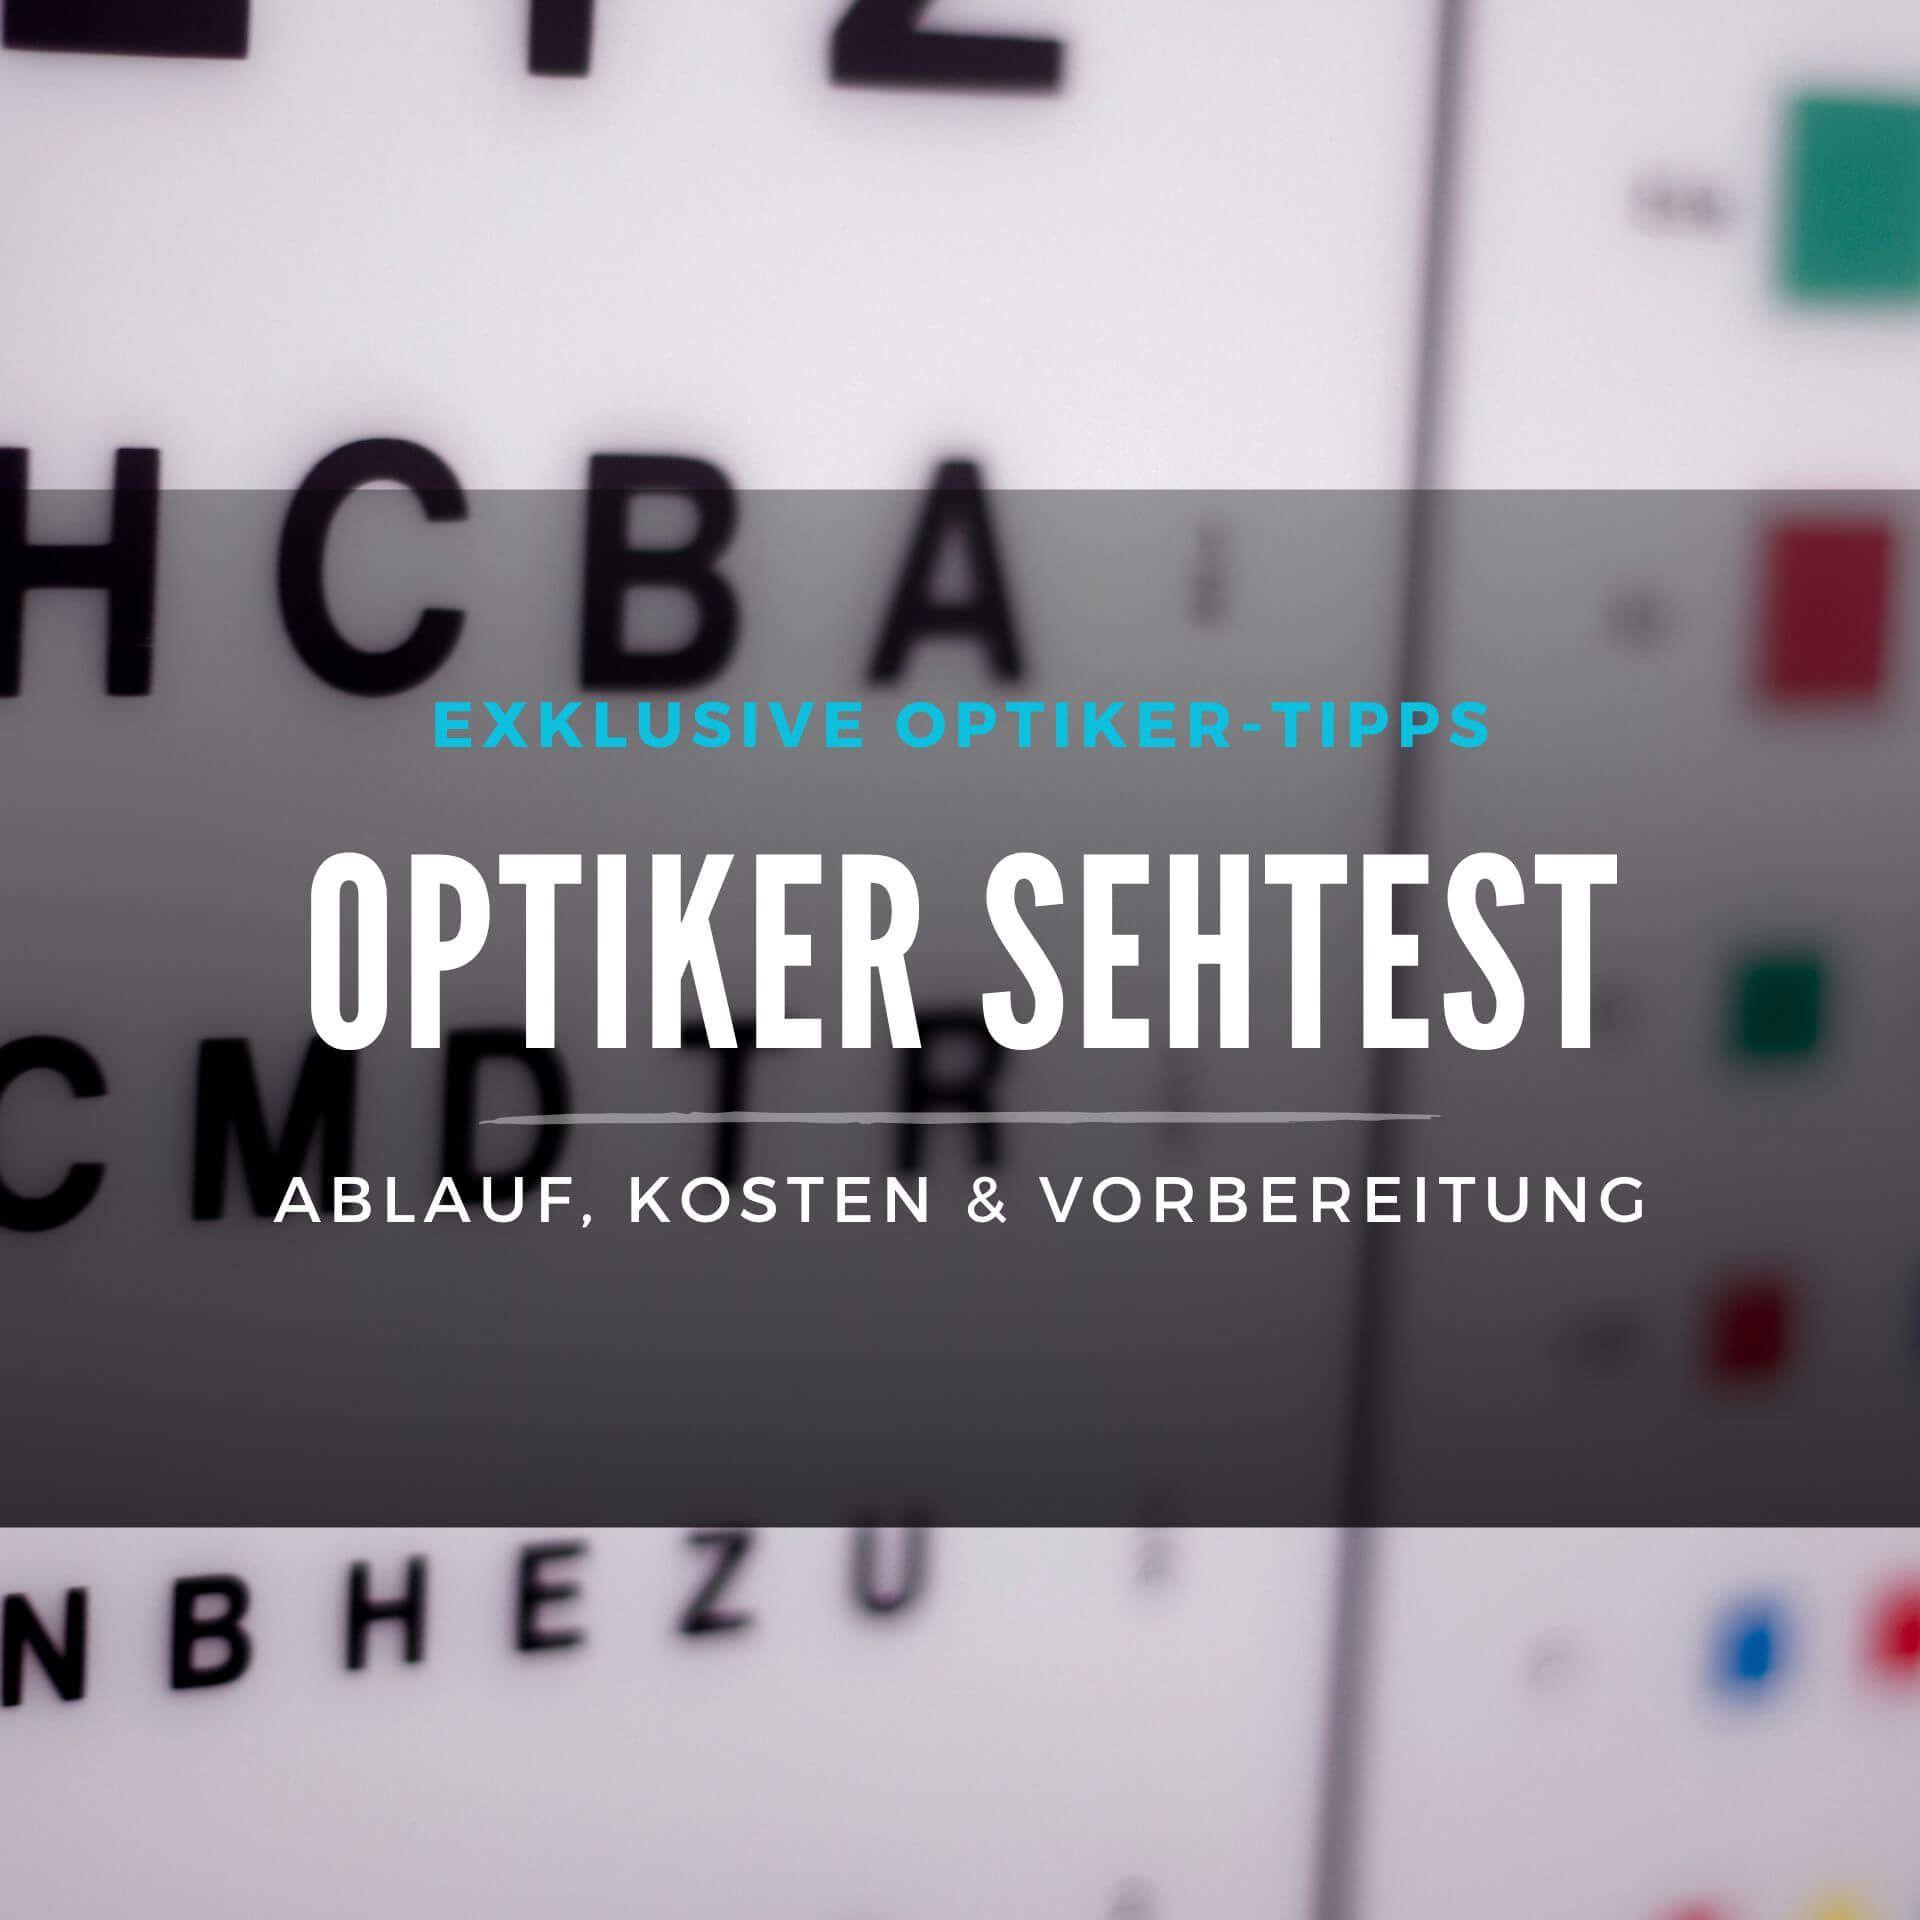 optiker-sehtest